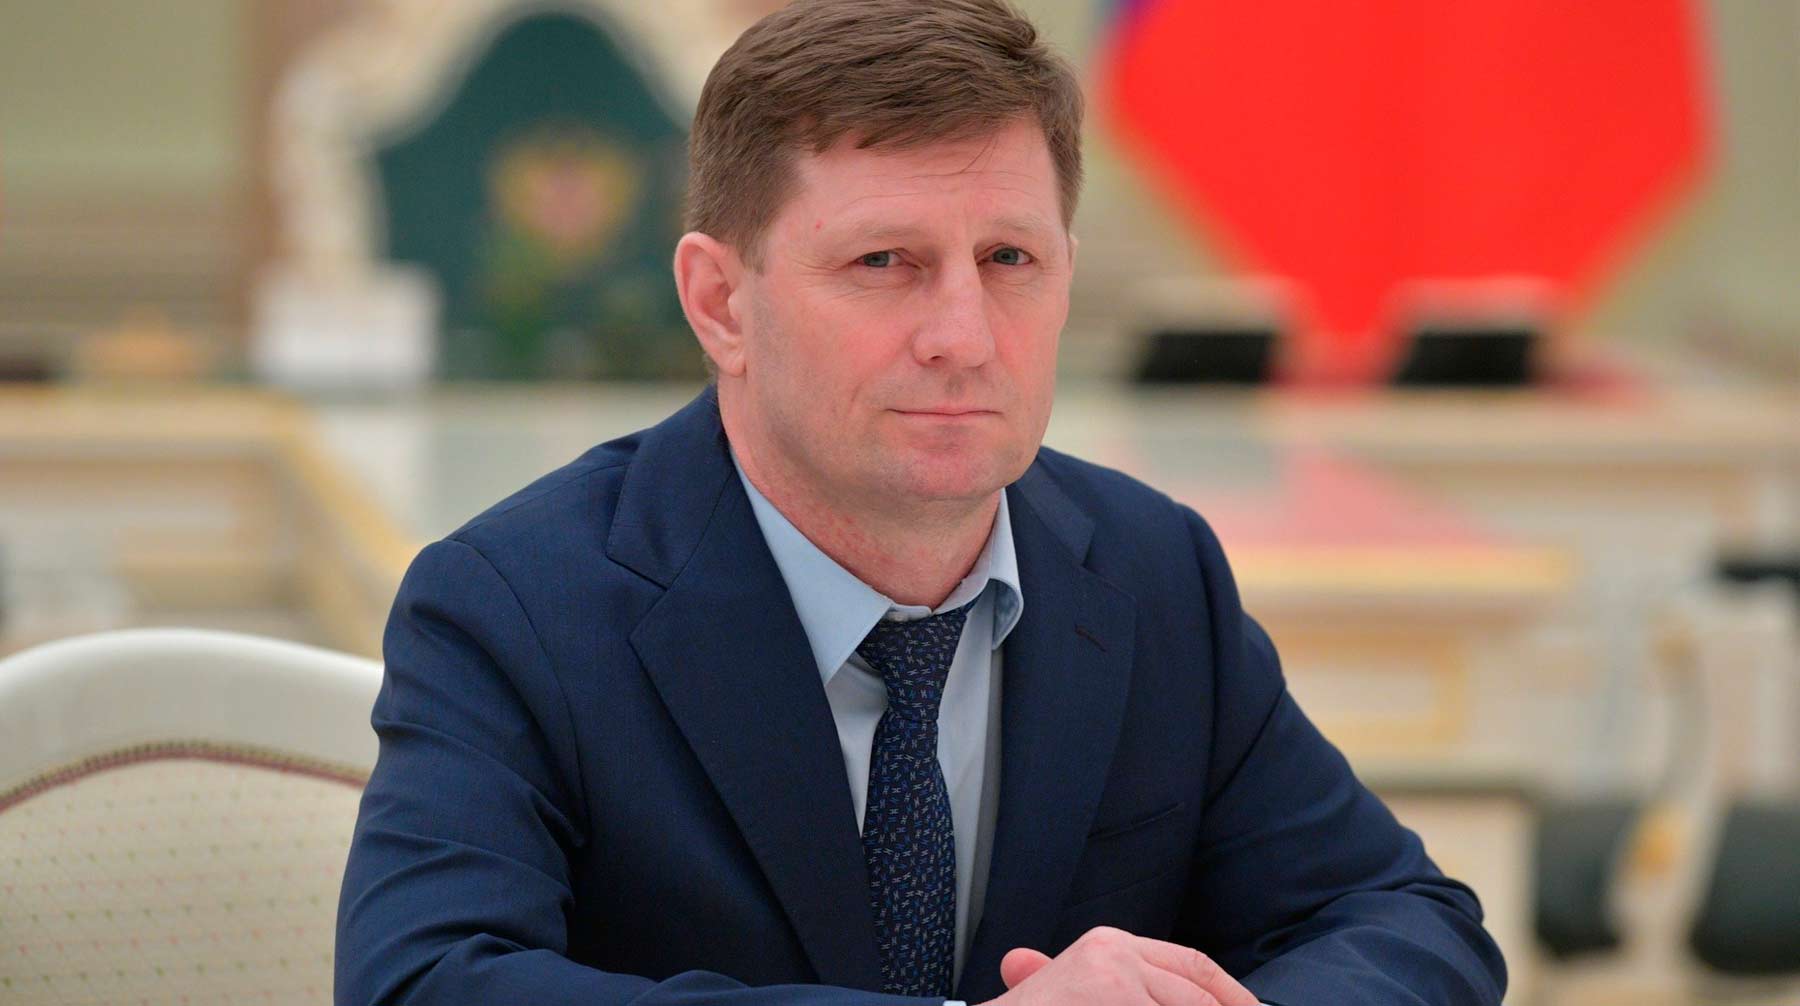 Спикер Госдумы отметил, что перед законом все равны, невзирая на партийную принадлежность Сергей Фургал